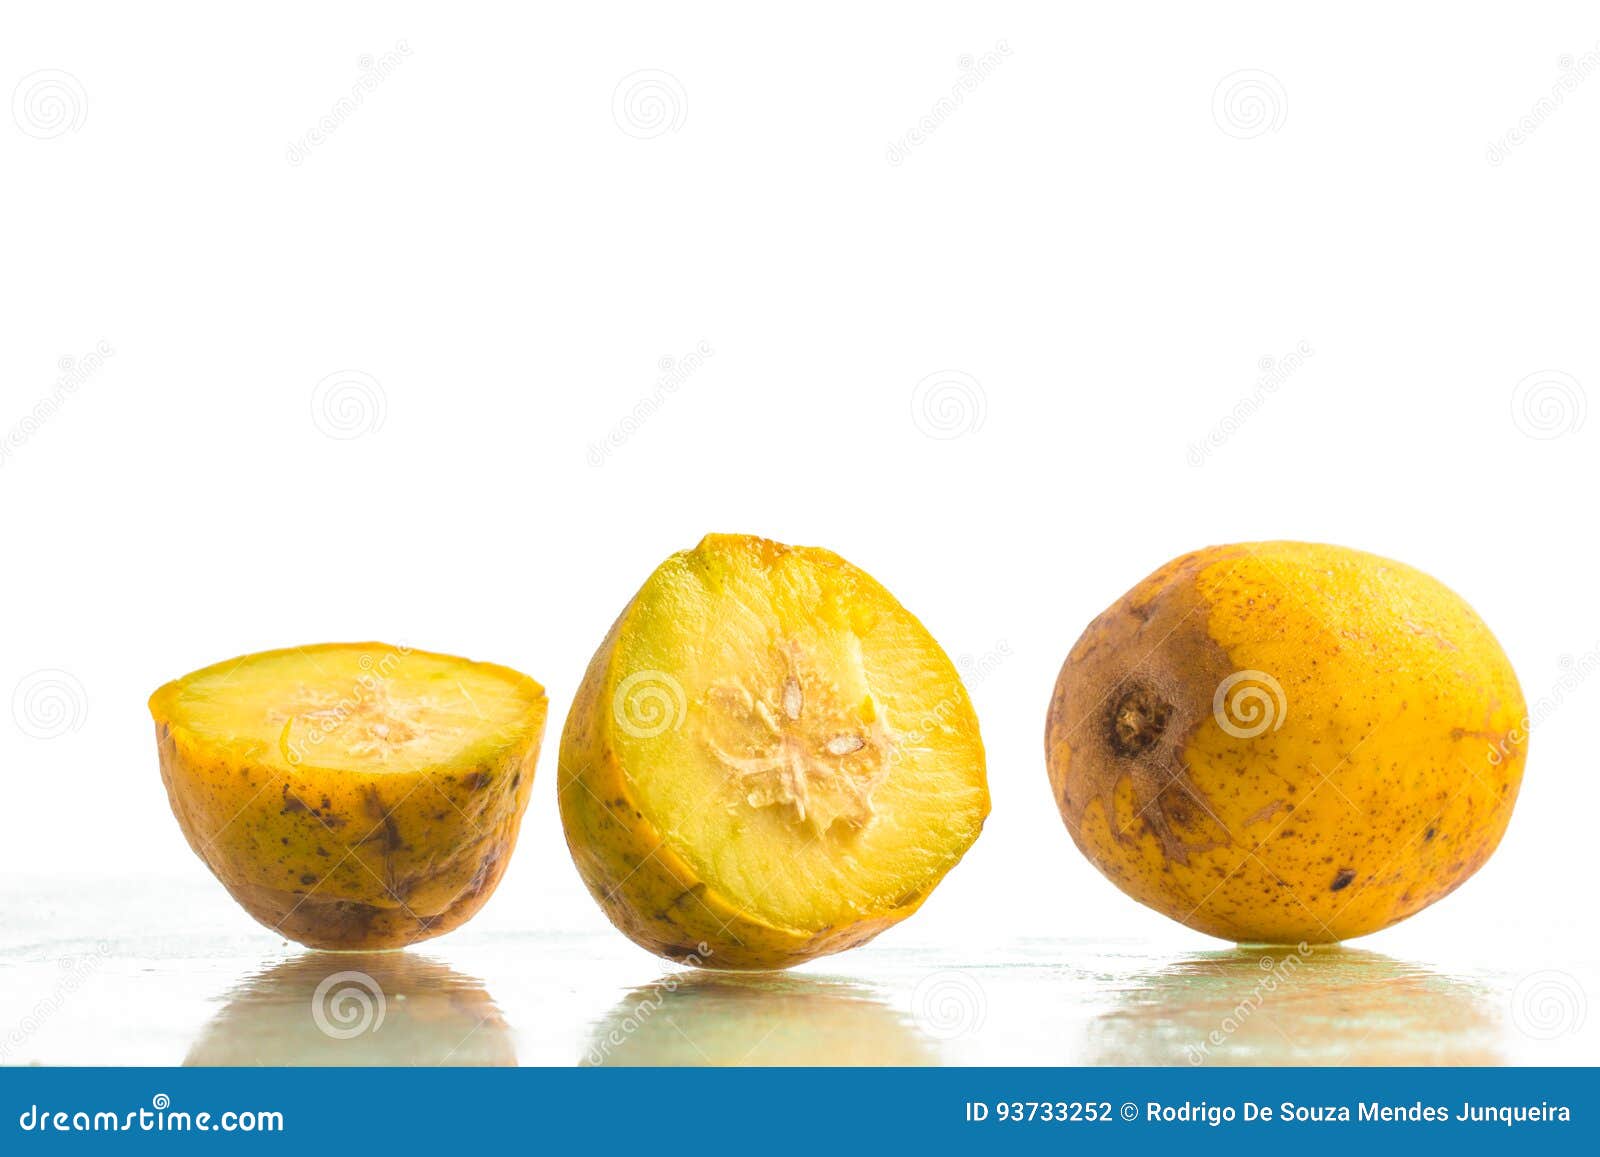 caja-manga fruit. spondias dulcis